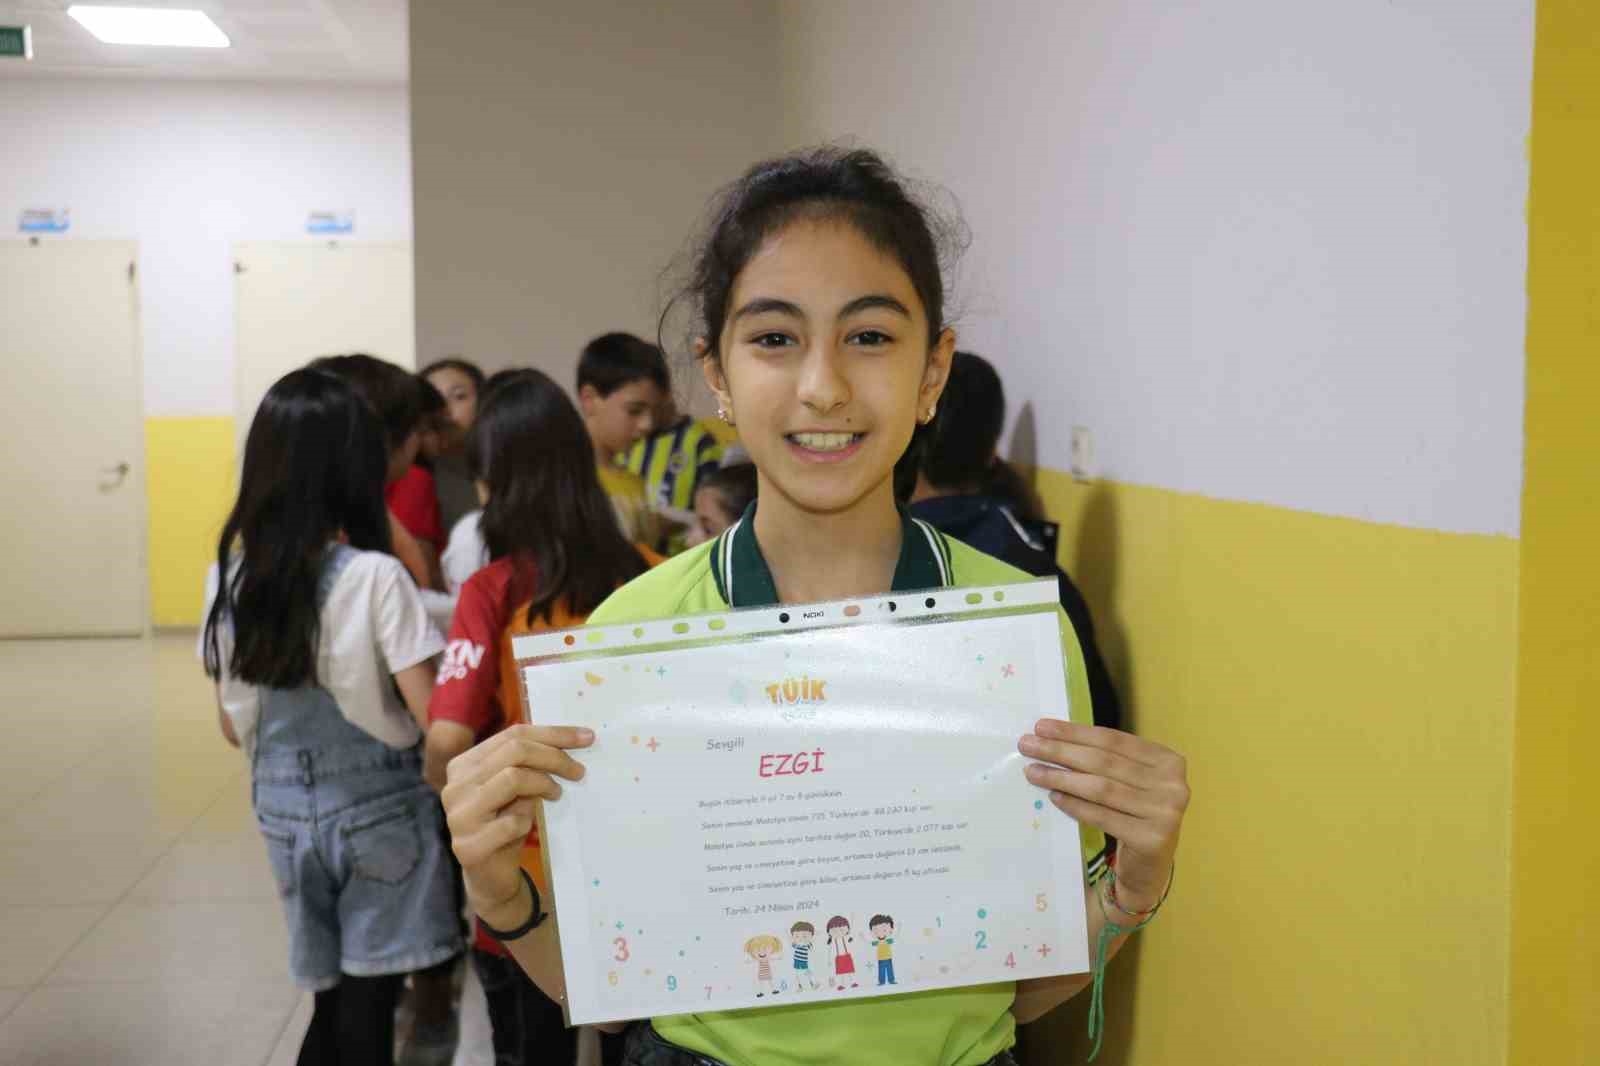 TÜİK’in çocuk portalı Malatya’da öğrencilerine tanıtıldı
